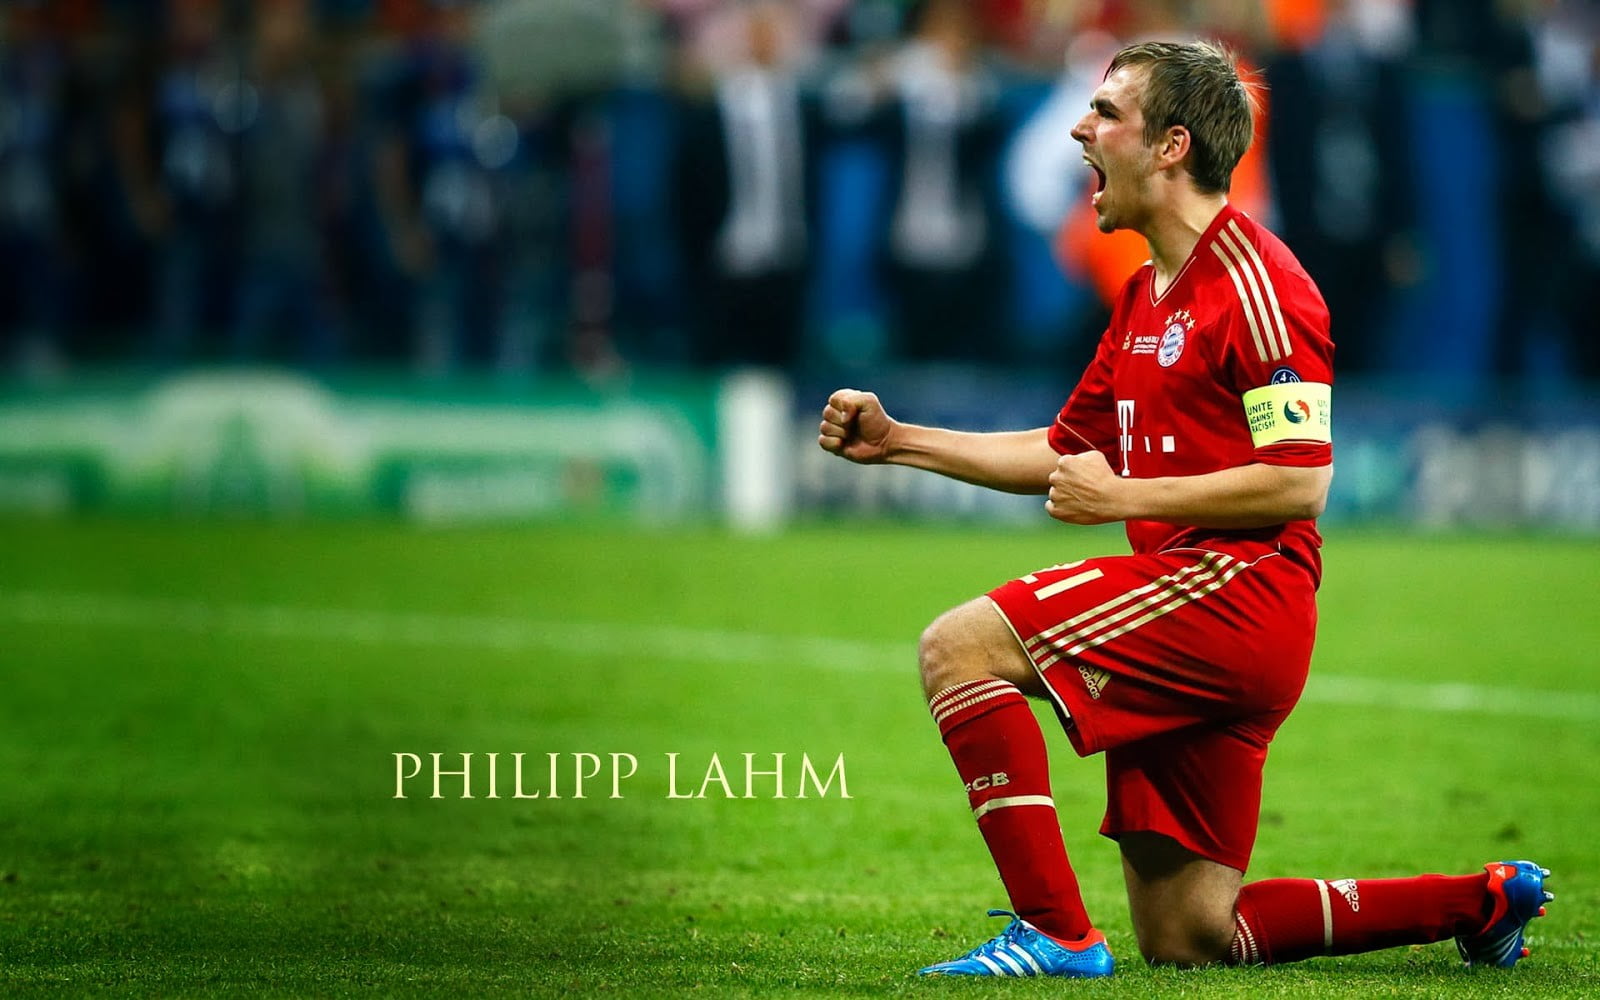 Philipp Lahm, FC Bayern , Bundesliga, soccer, sport, grass, full length